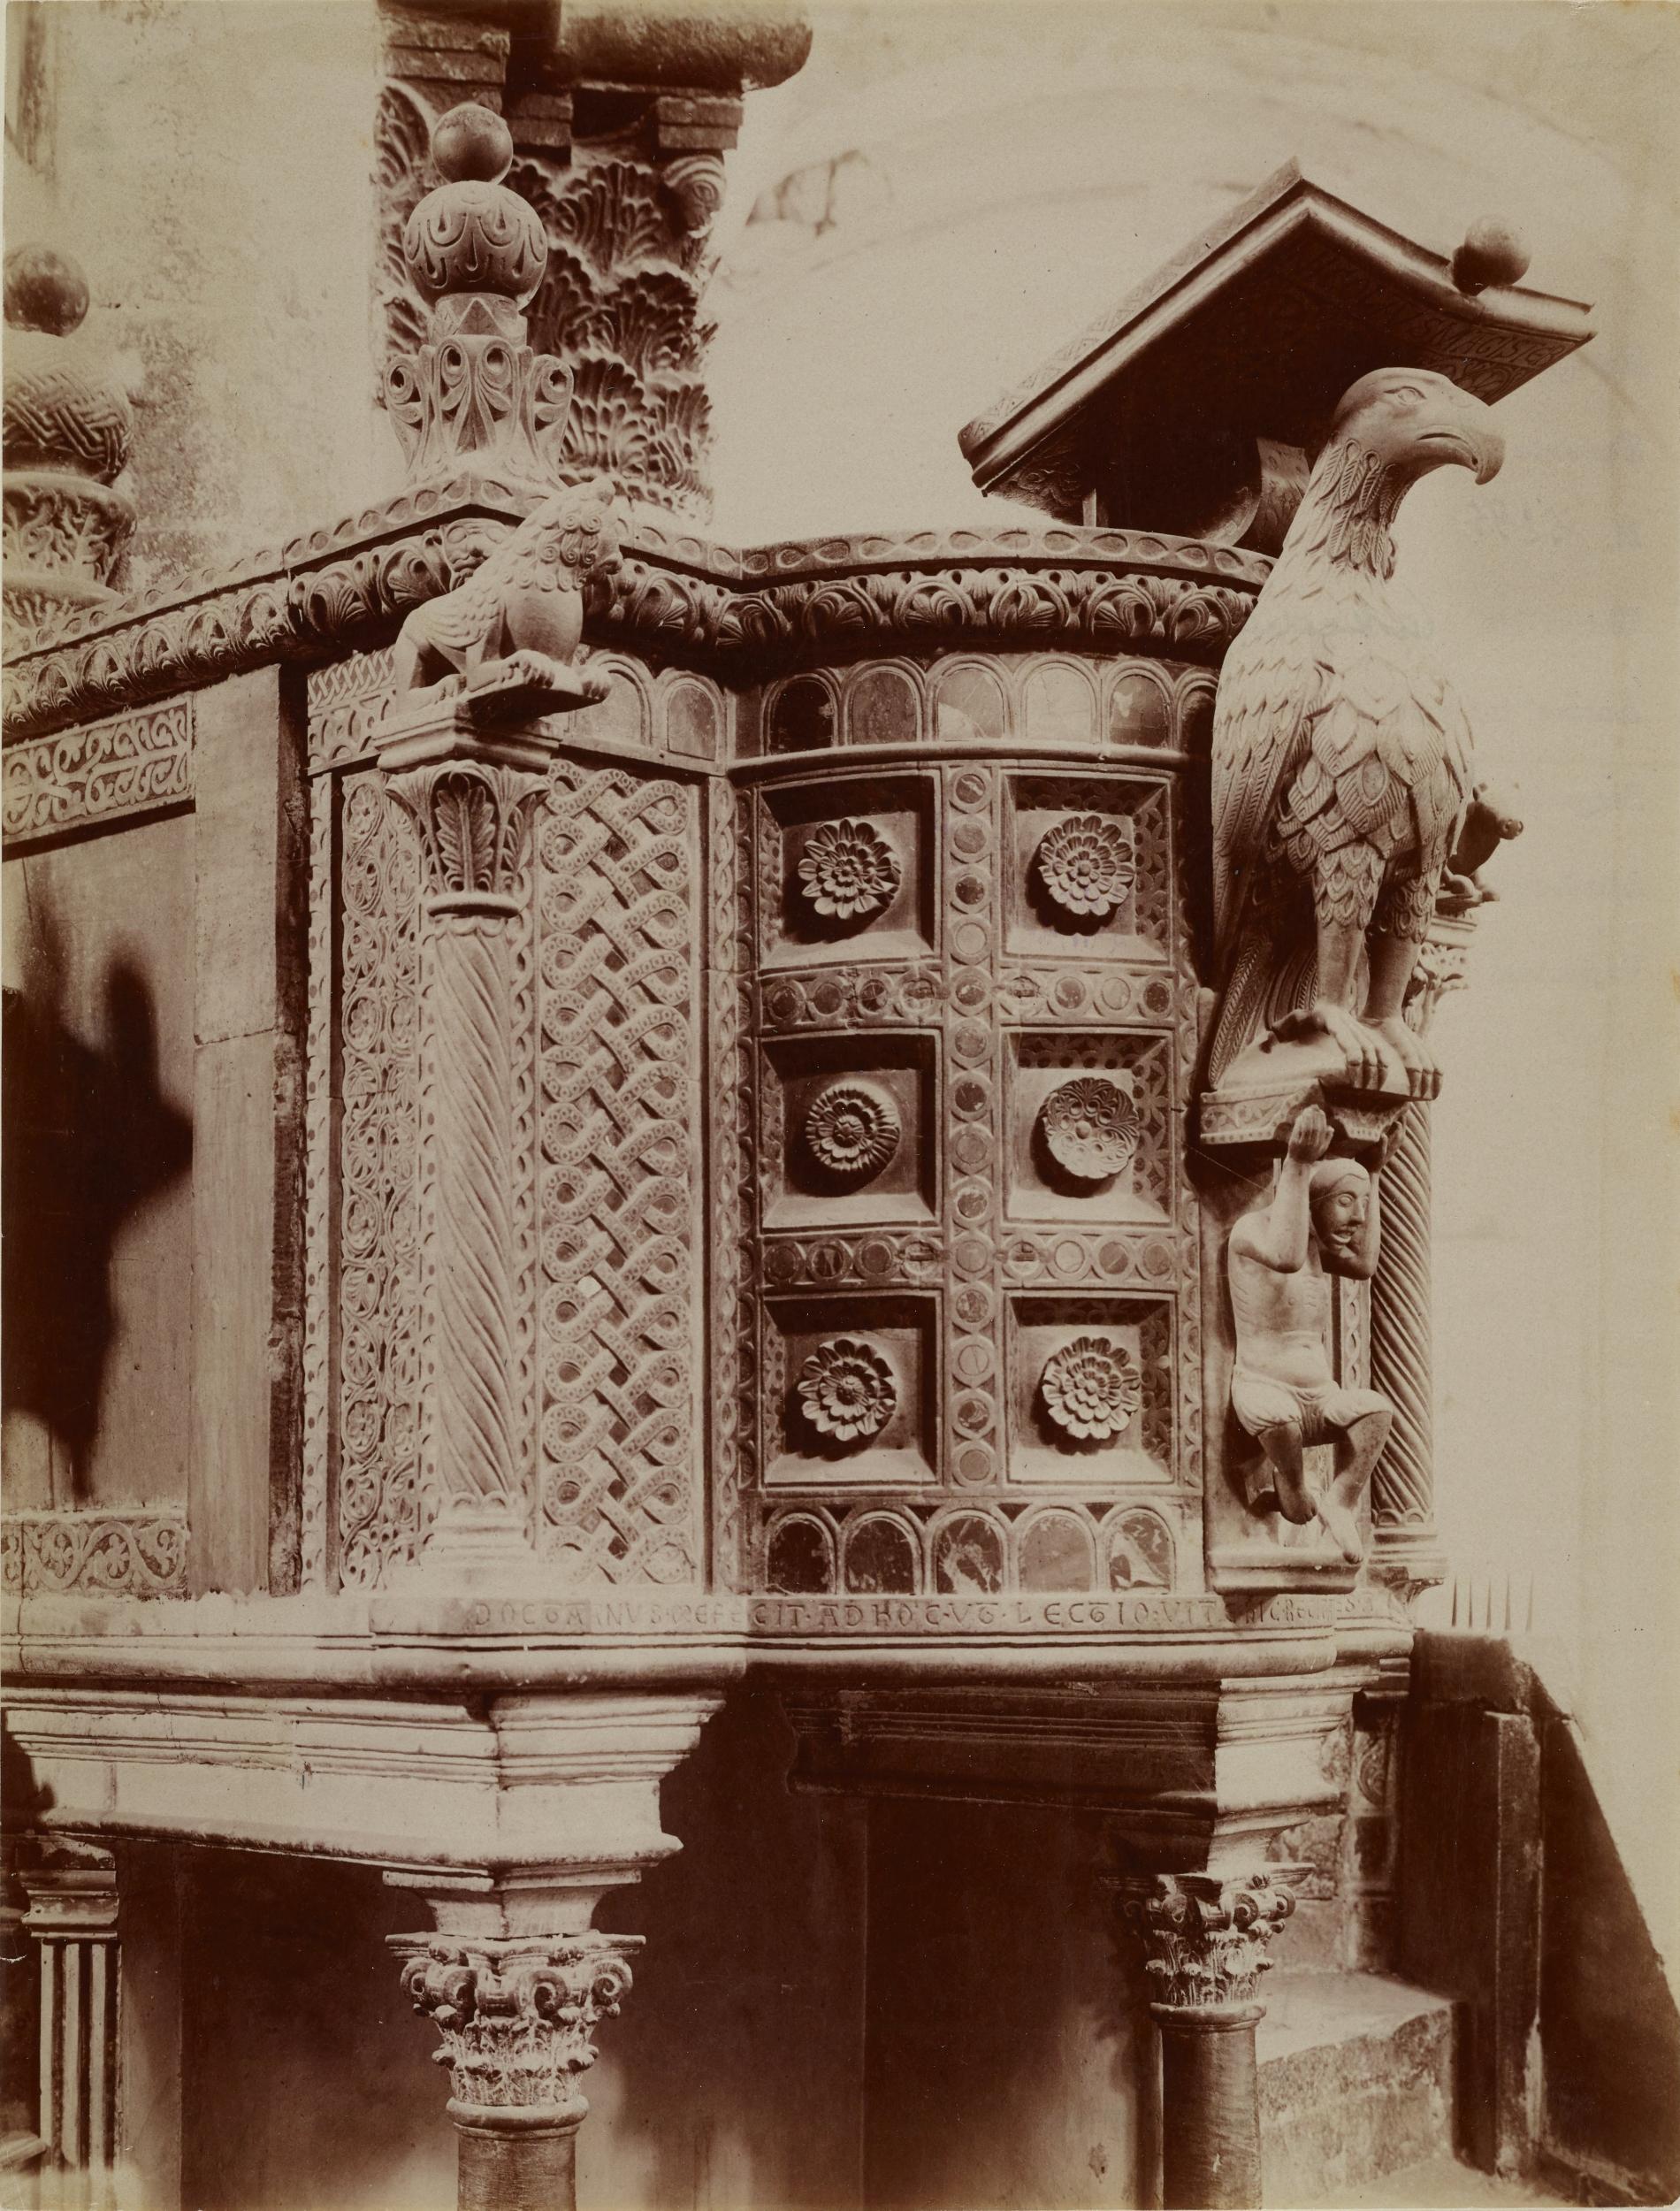 Fotografo non identificato, Bitonto - Cattedrale di S. Valentino, ambone - prospetto, 1876-1900, albumina/carta, MPI137869